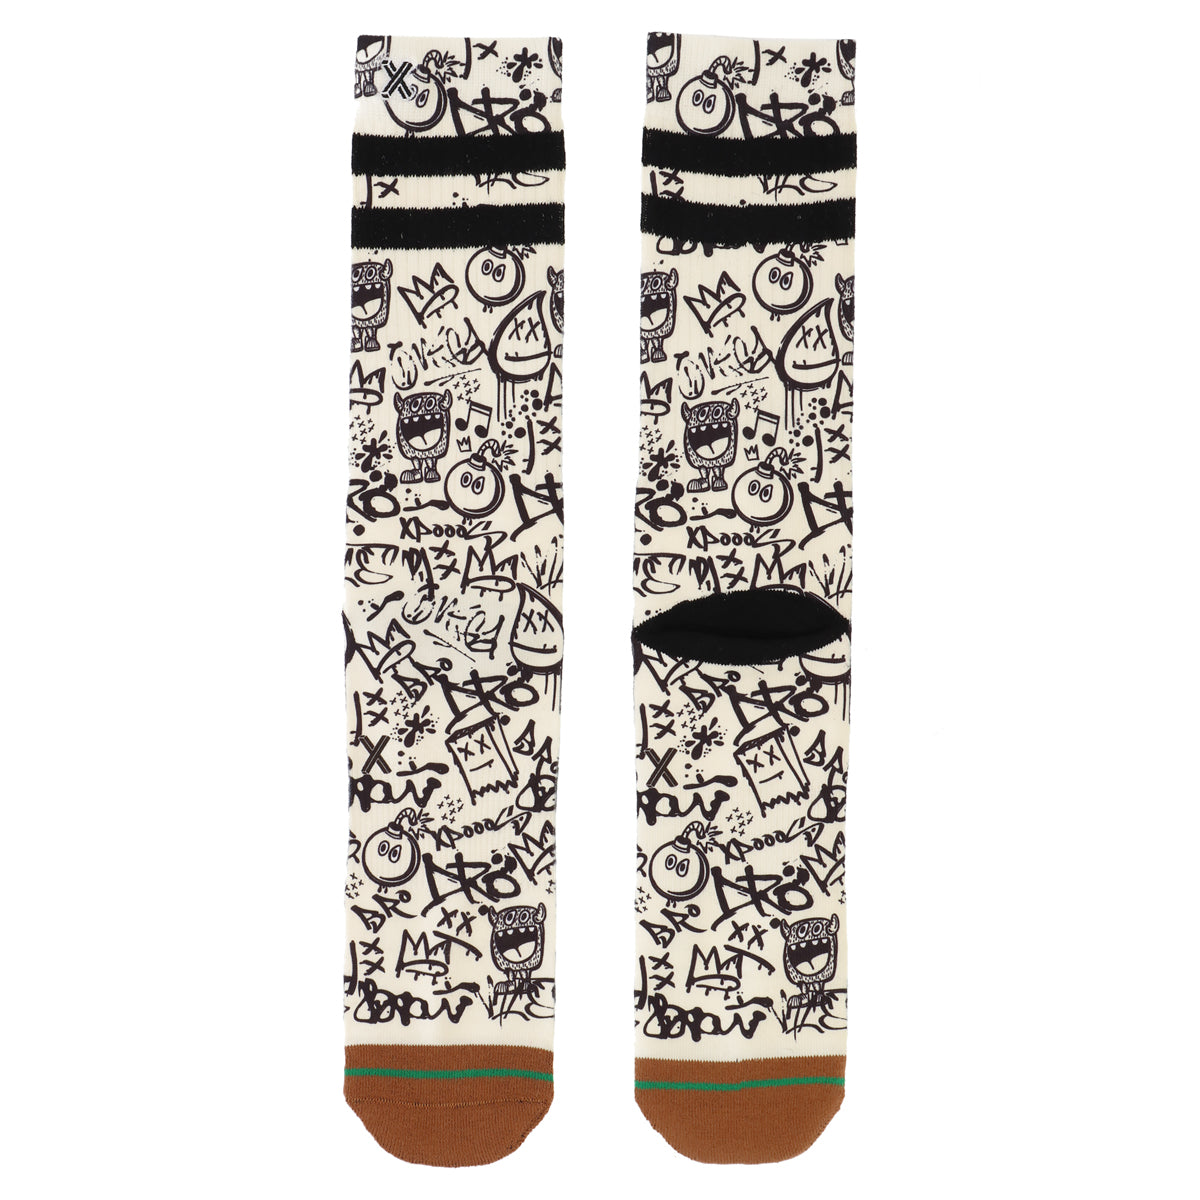 Graffiti men's socks